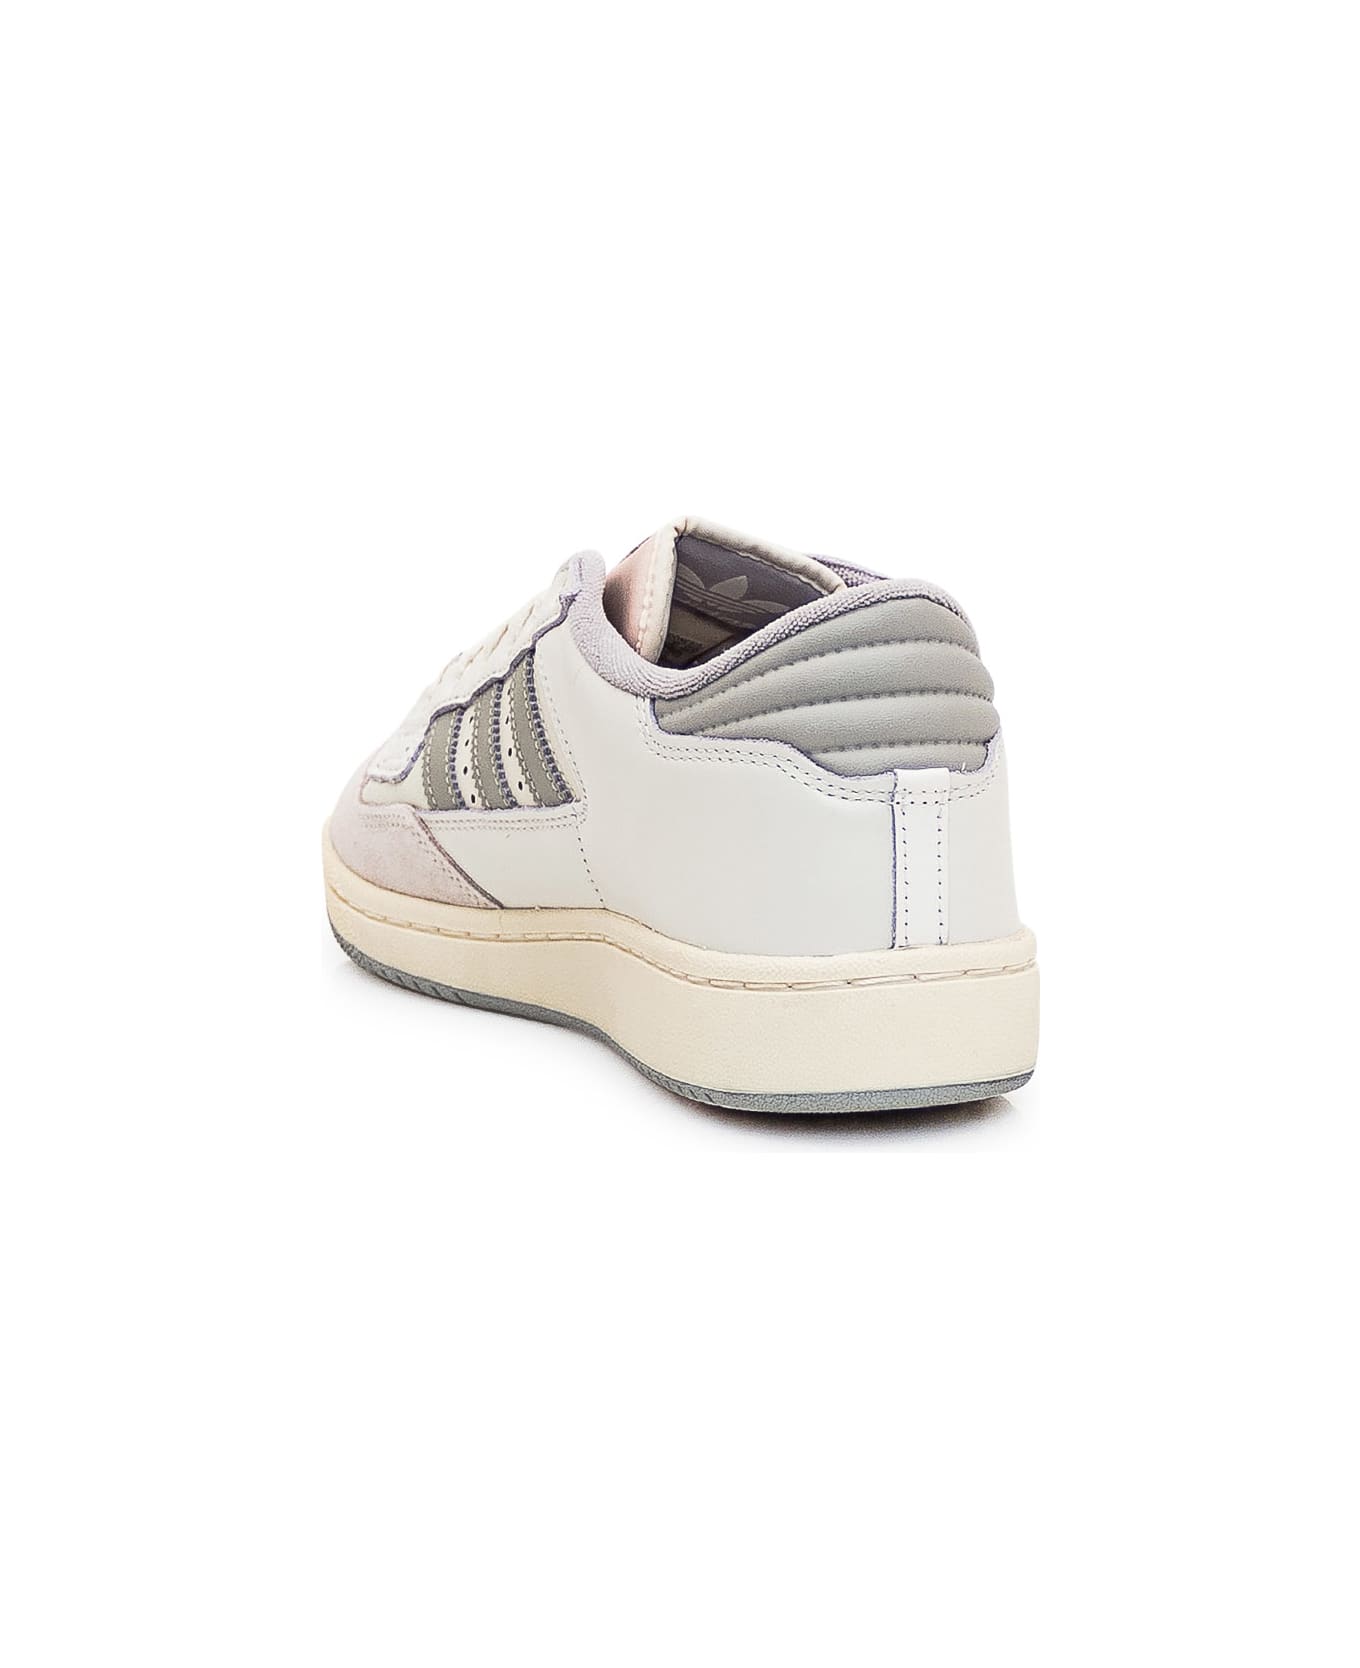 Adidas Originals Centennial 85 Sneaker - CLOWHI/METGRY/CWHITE